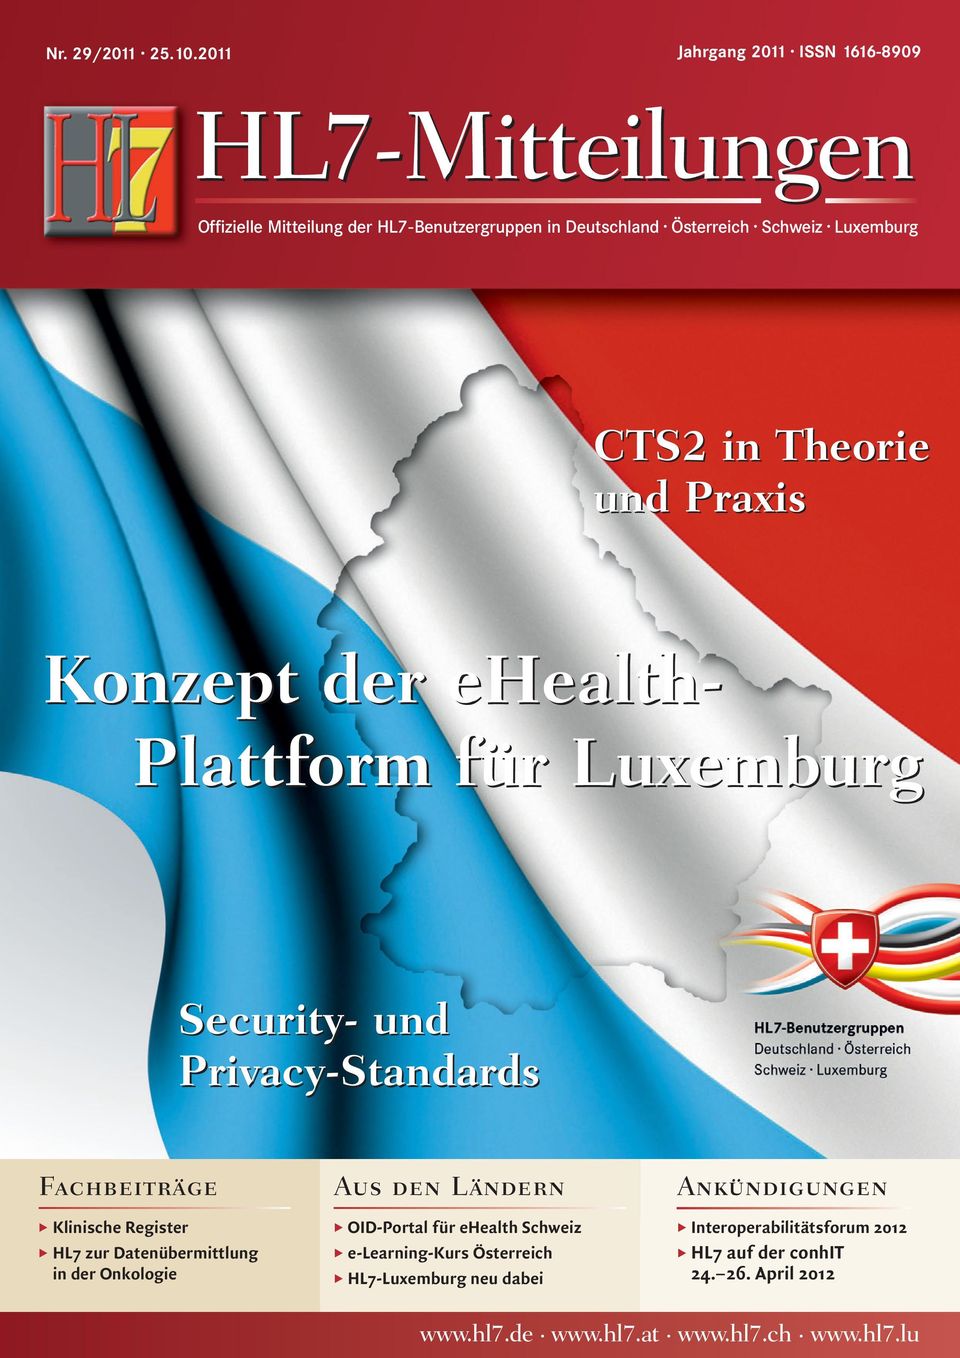 Luxemburg CTS2 in Theorie und Praxis Konzept der ehealth- Plattform für Luxemburg Security- und Privacy-Standards Fachbeiträge Klinische